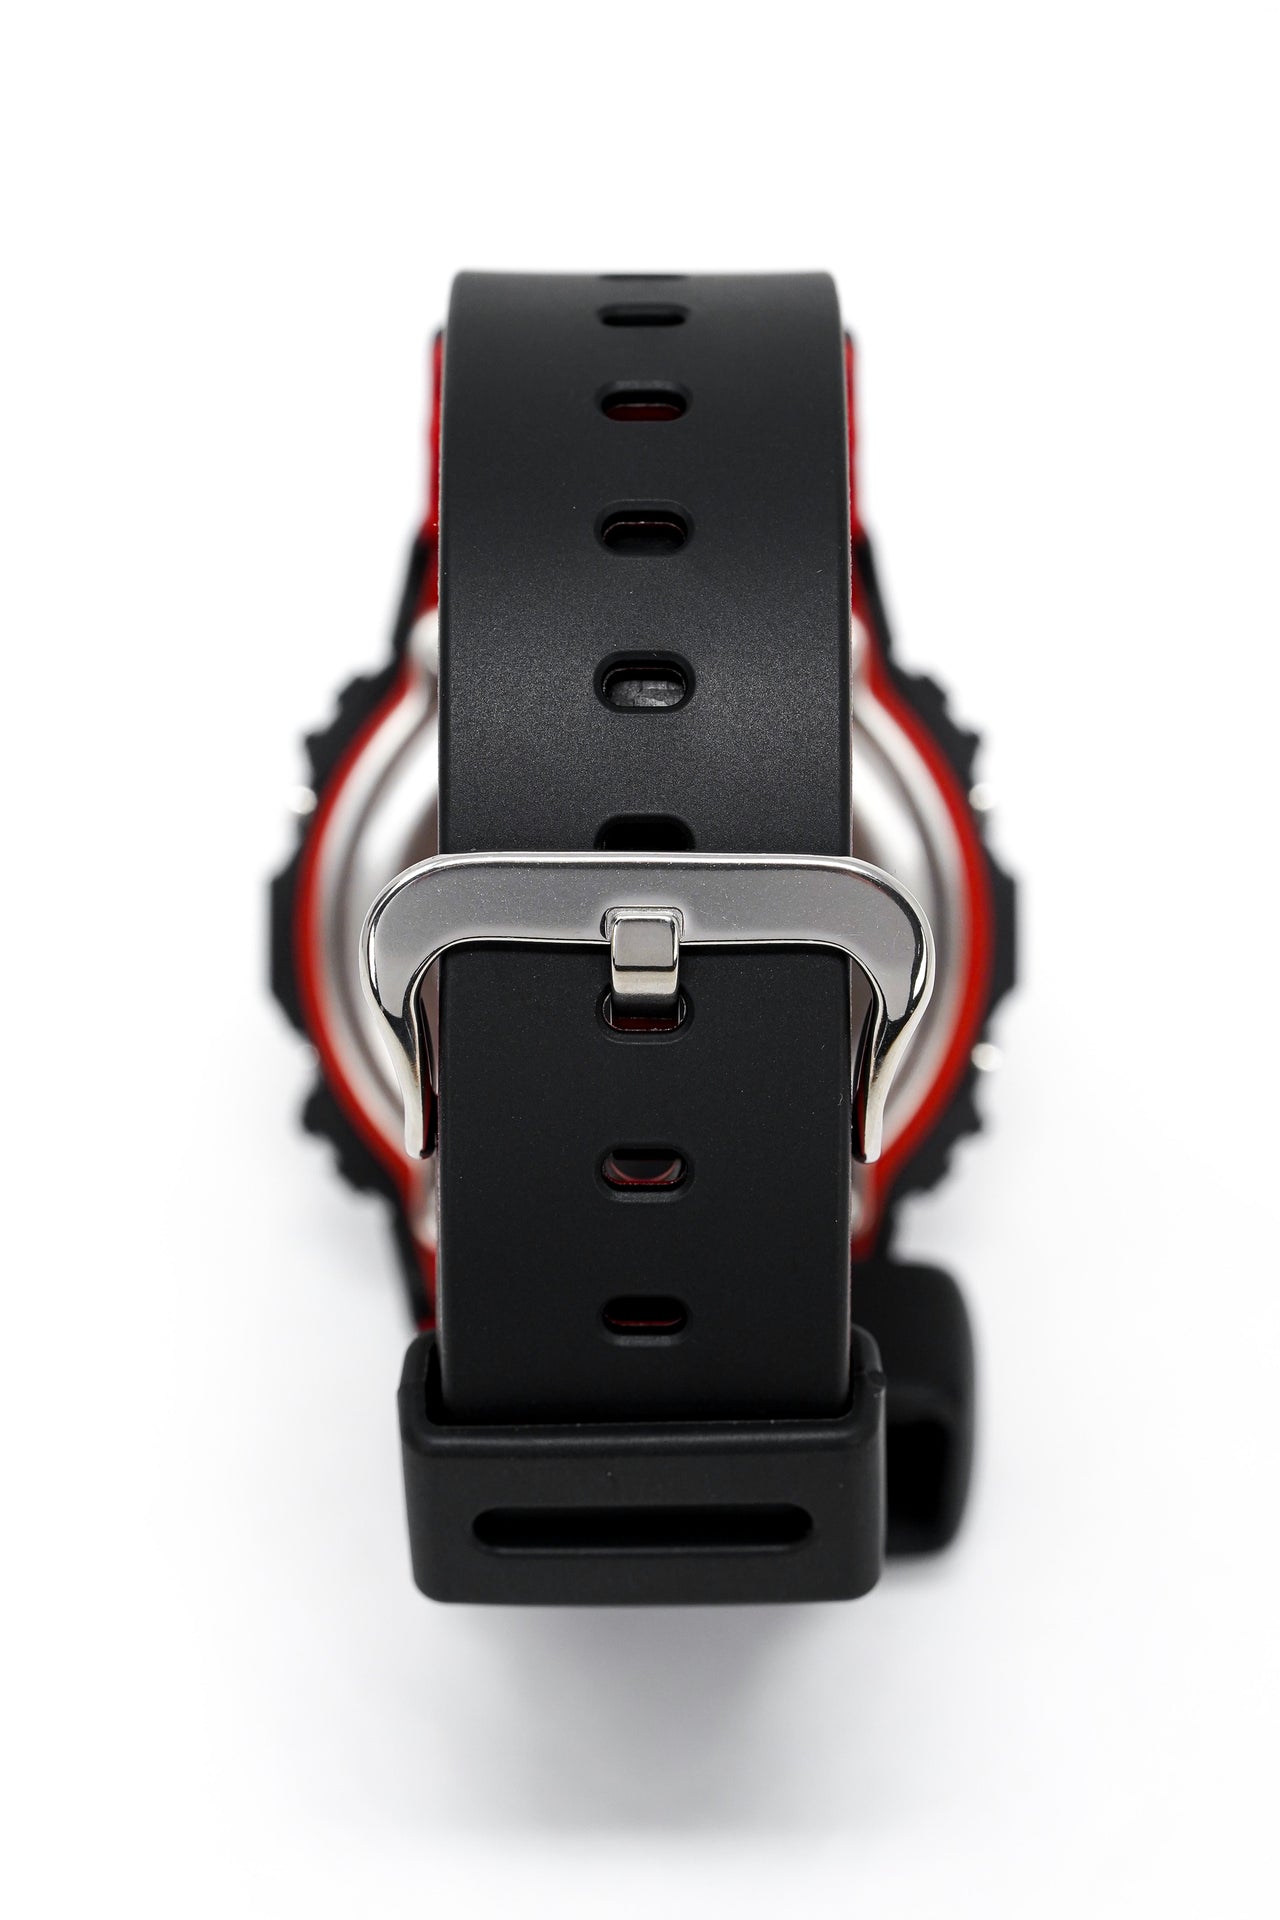 Casio G-Shock Watch Men's Black/Red DW-5600HR-1DR